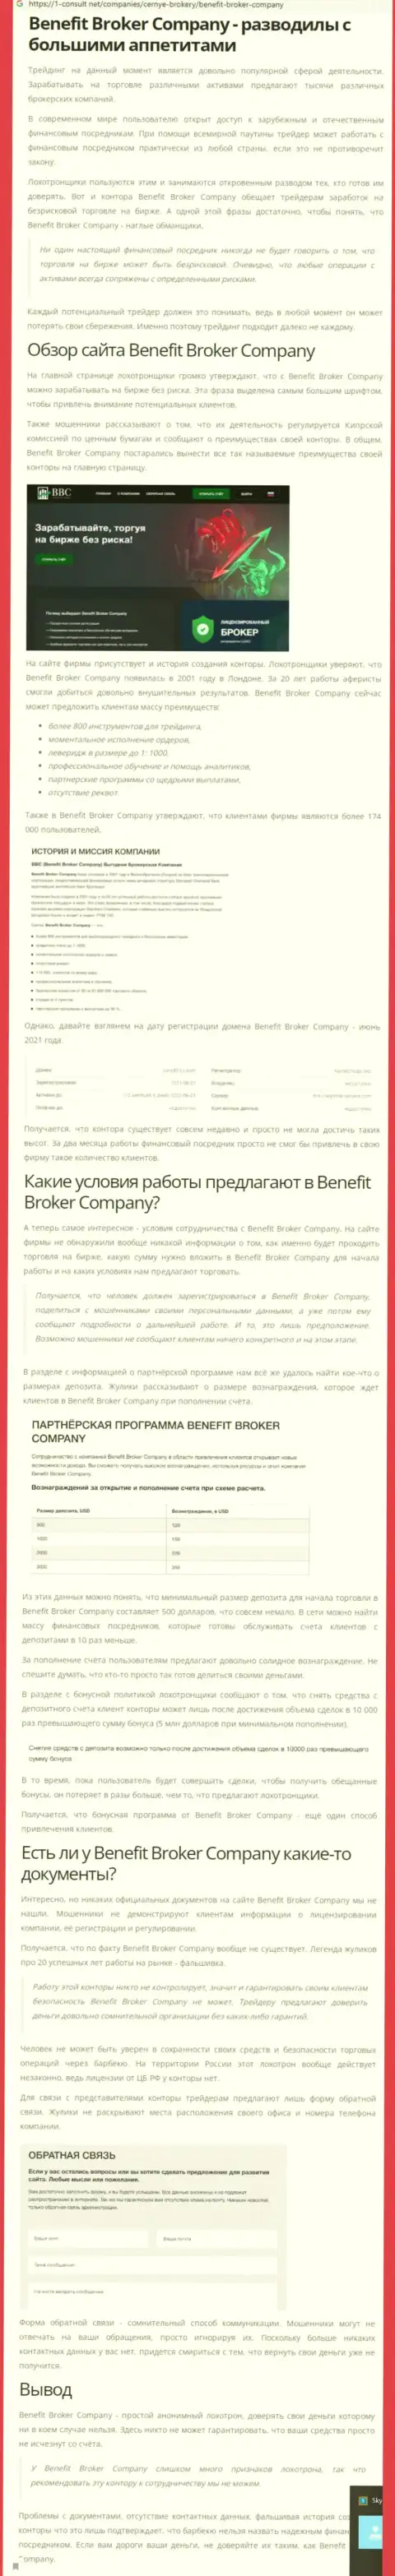 Бенефит Брокер Компани - АФЕРИСТЫ !!! Отжатие финансовых активов гарантируют (обзор компании)